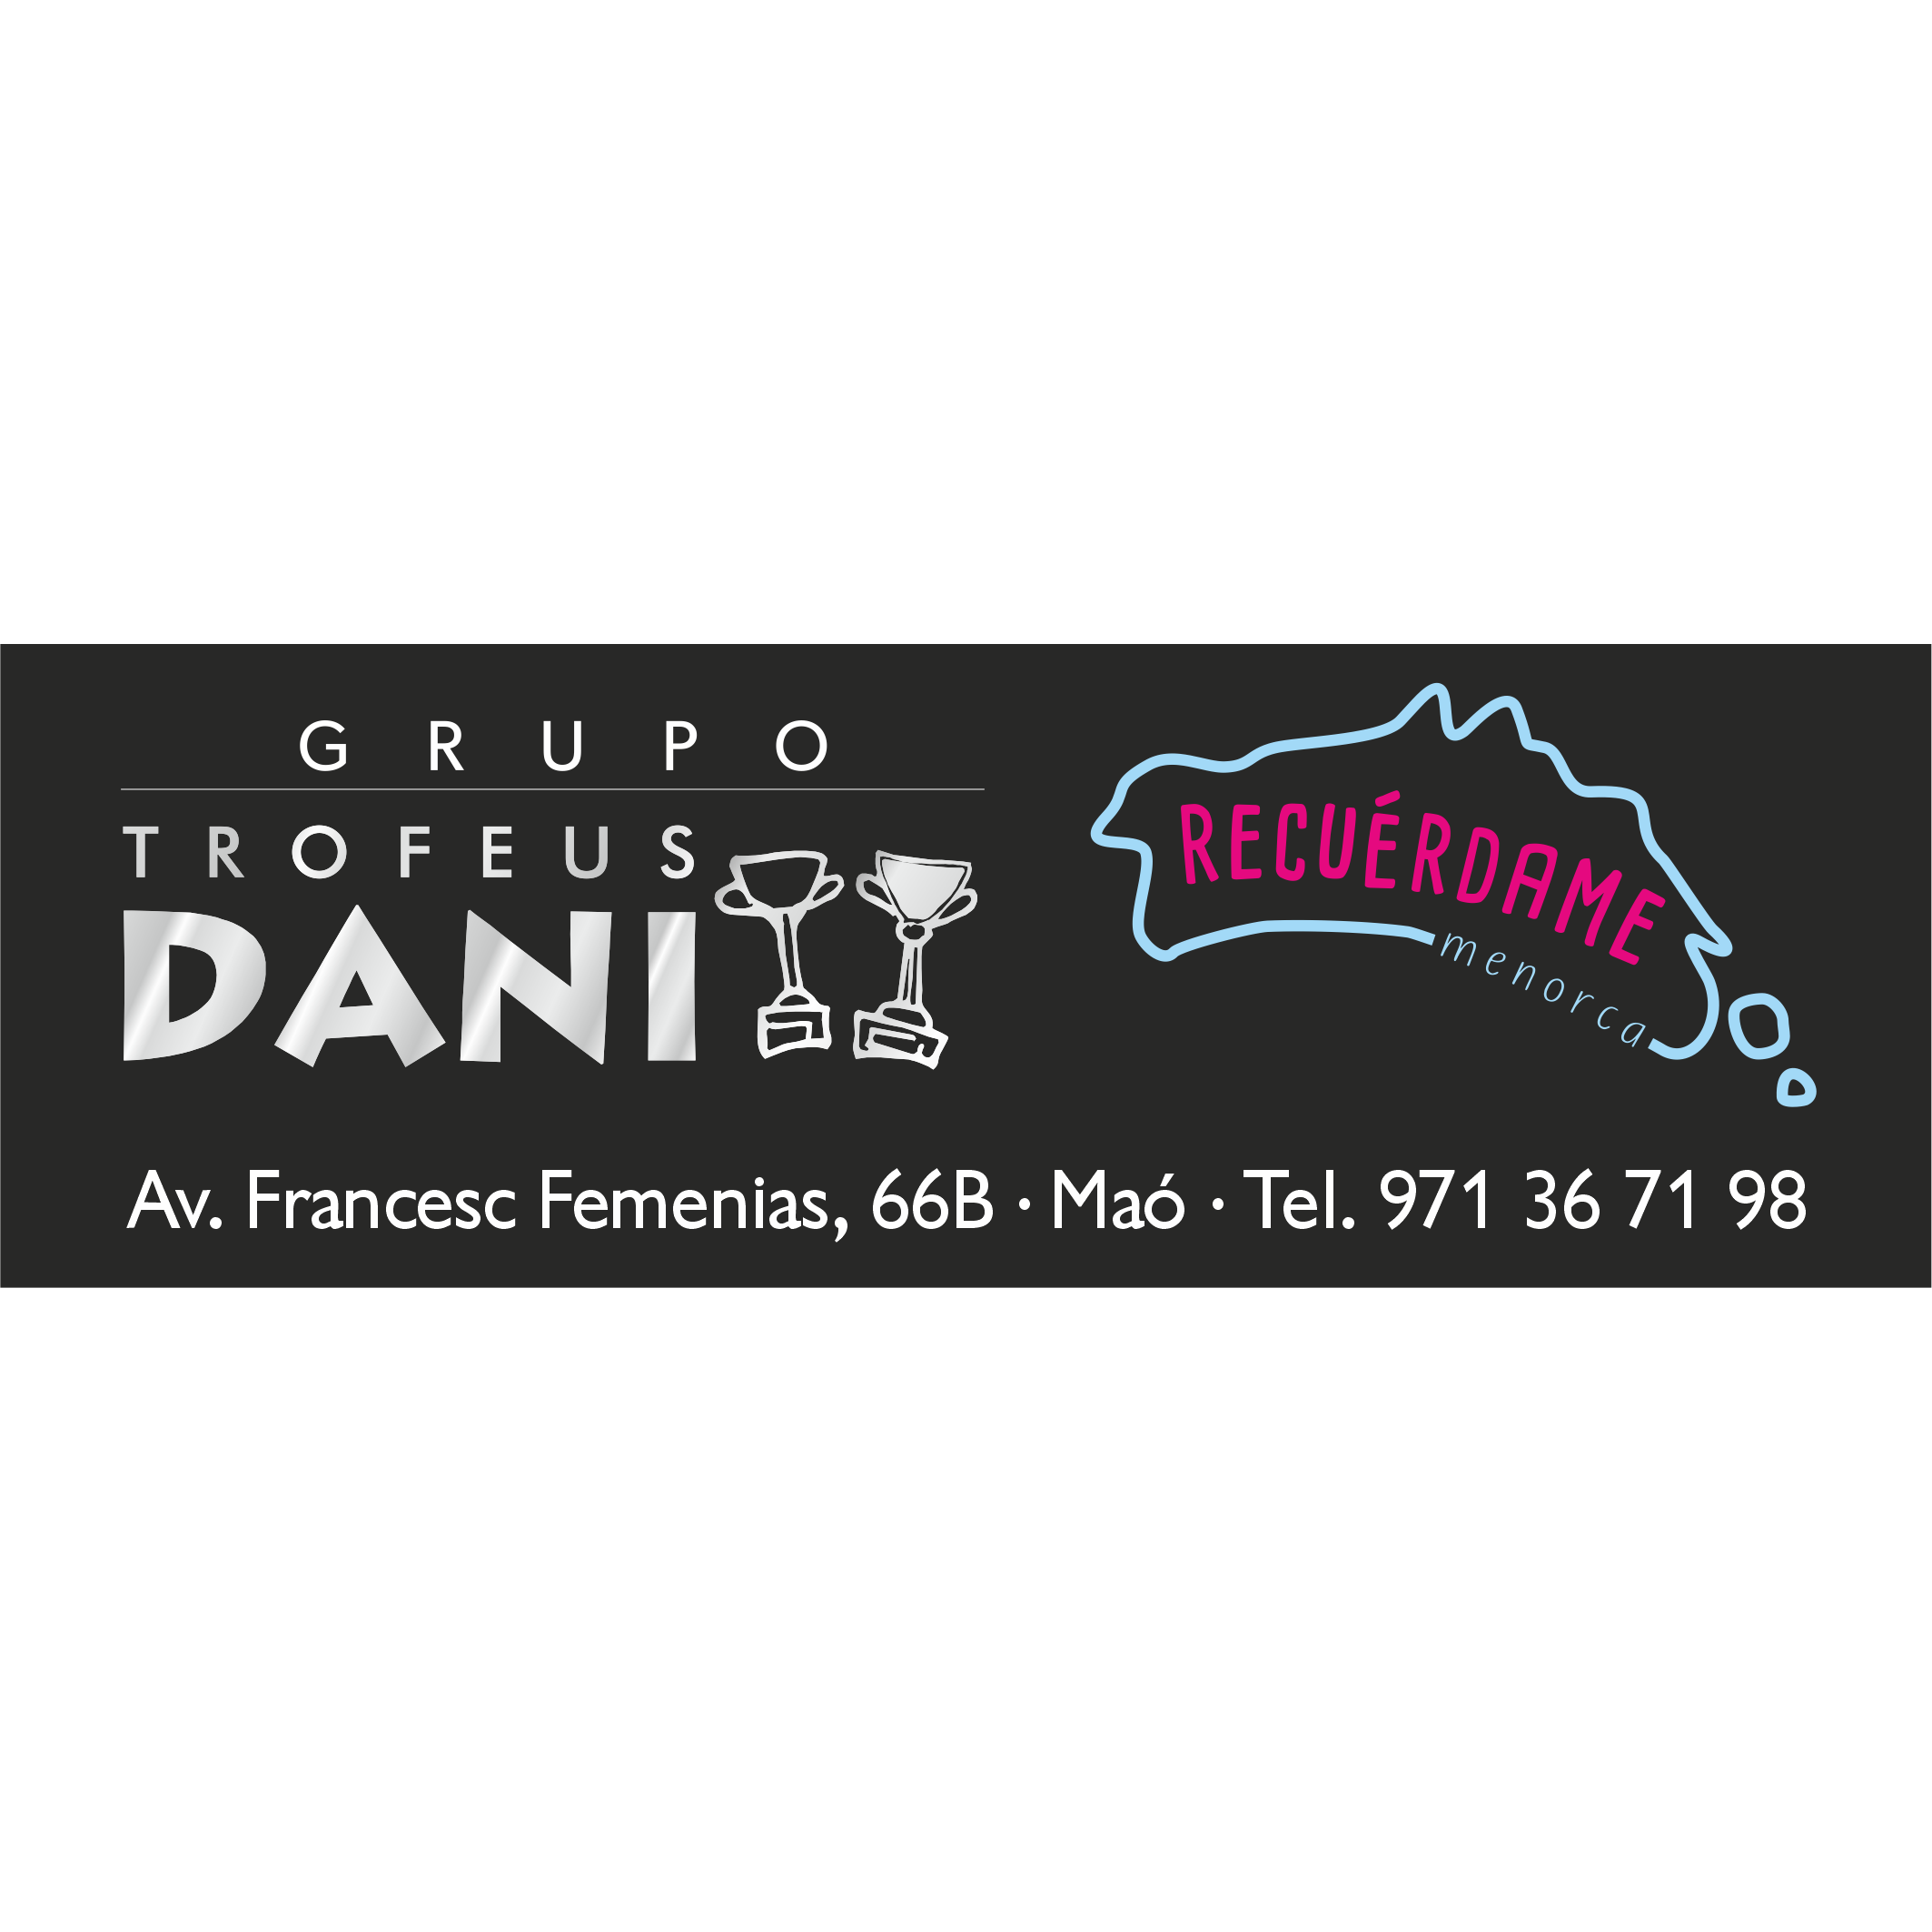 Trofeus Dani Logo